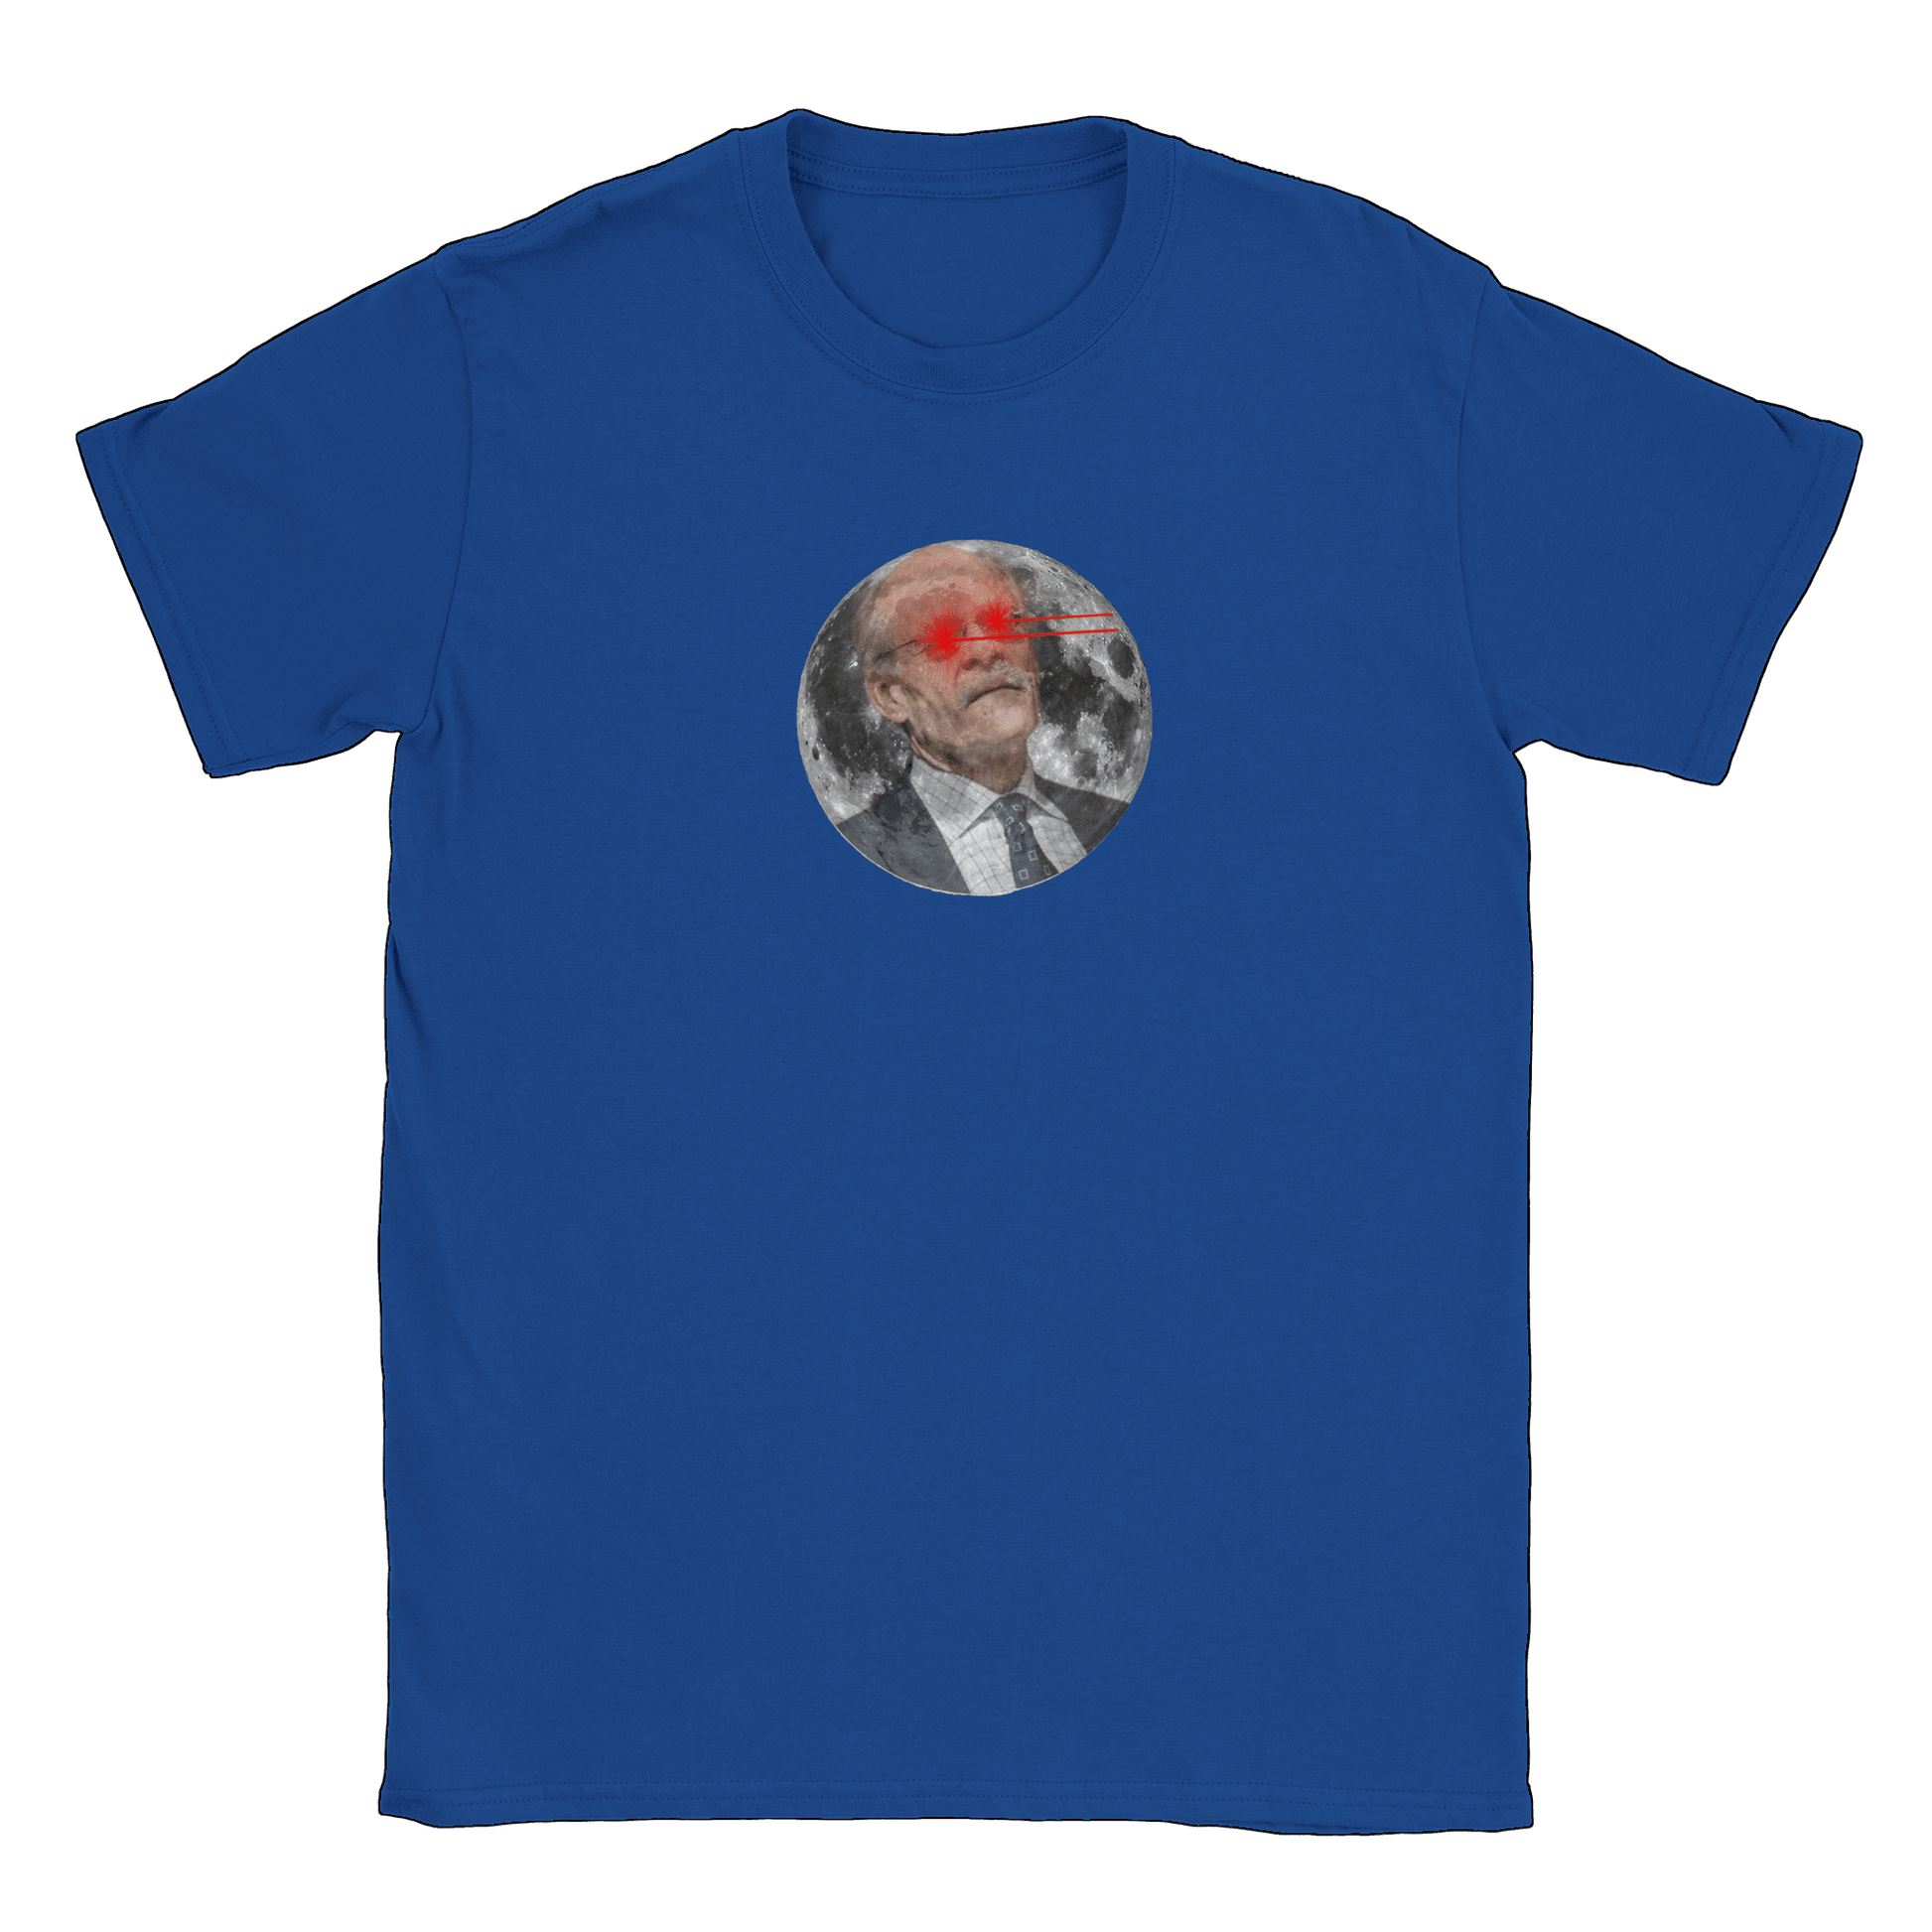 Riksbankschef till månen - T-shirt Royal